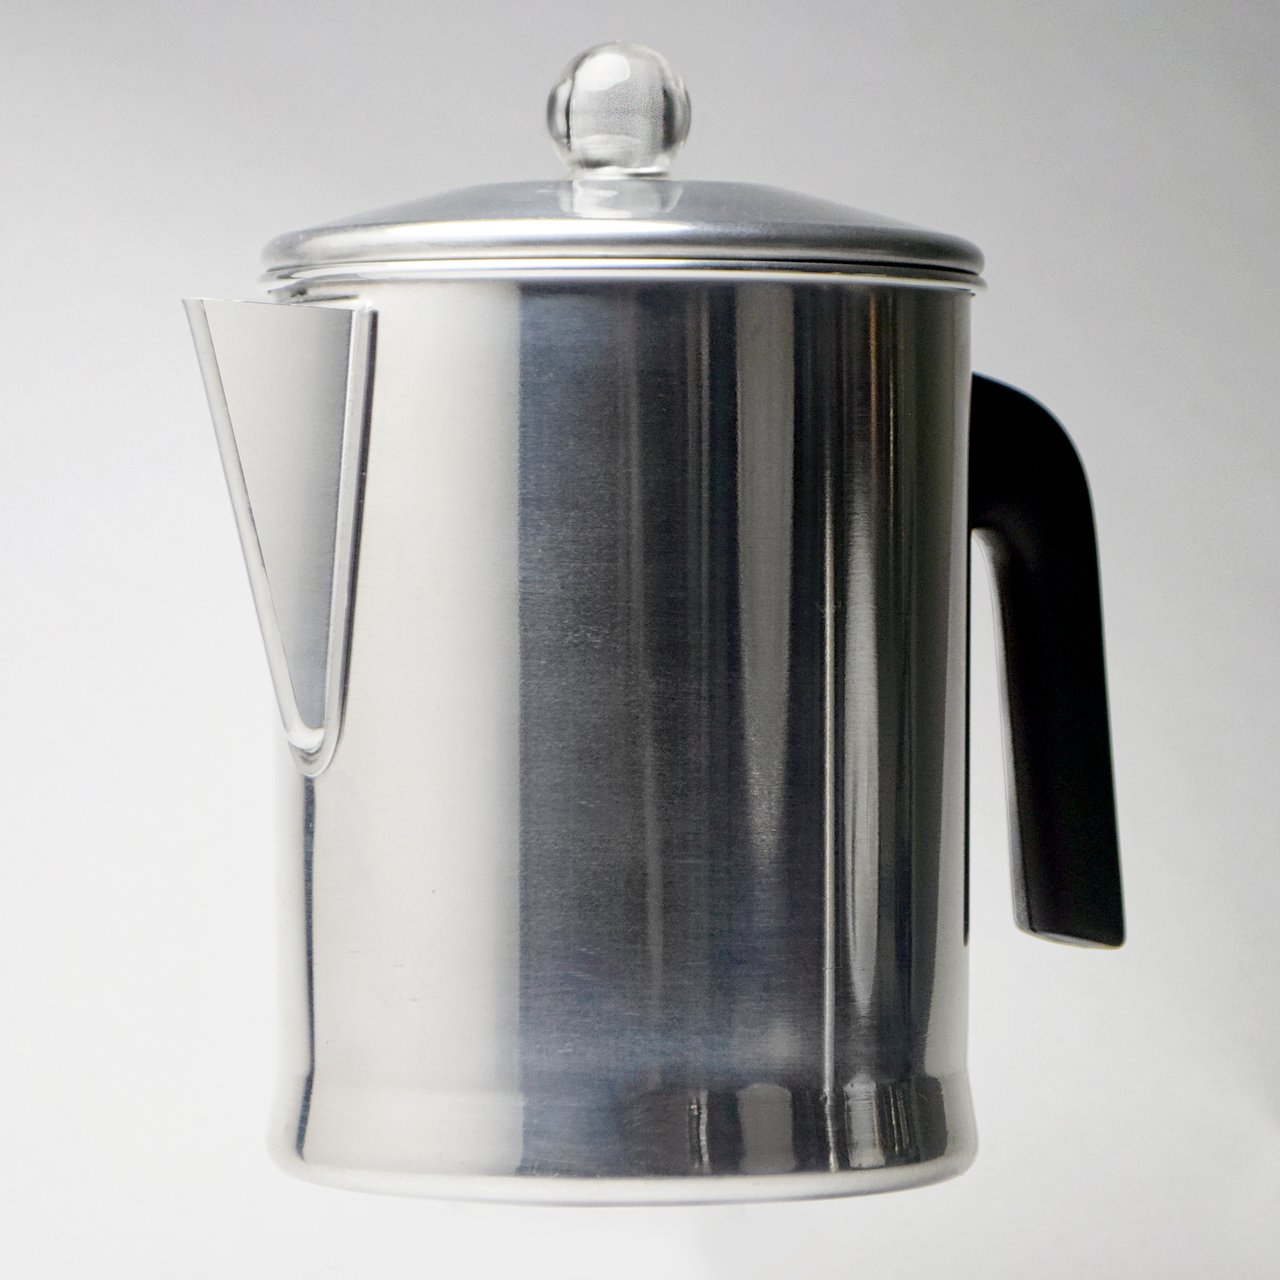 4 Primula Today 9-Cup Aluminum Coffee Percolator